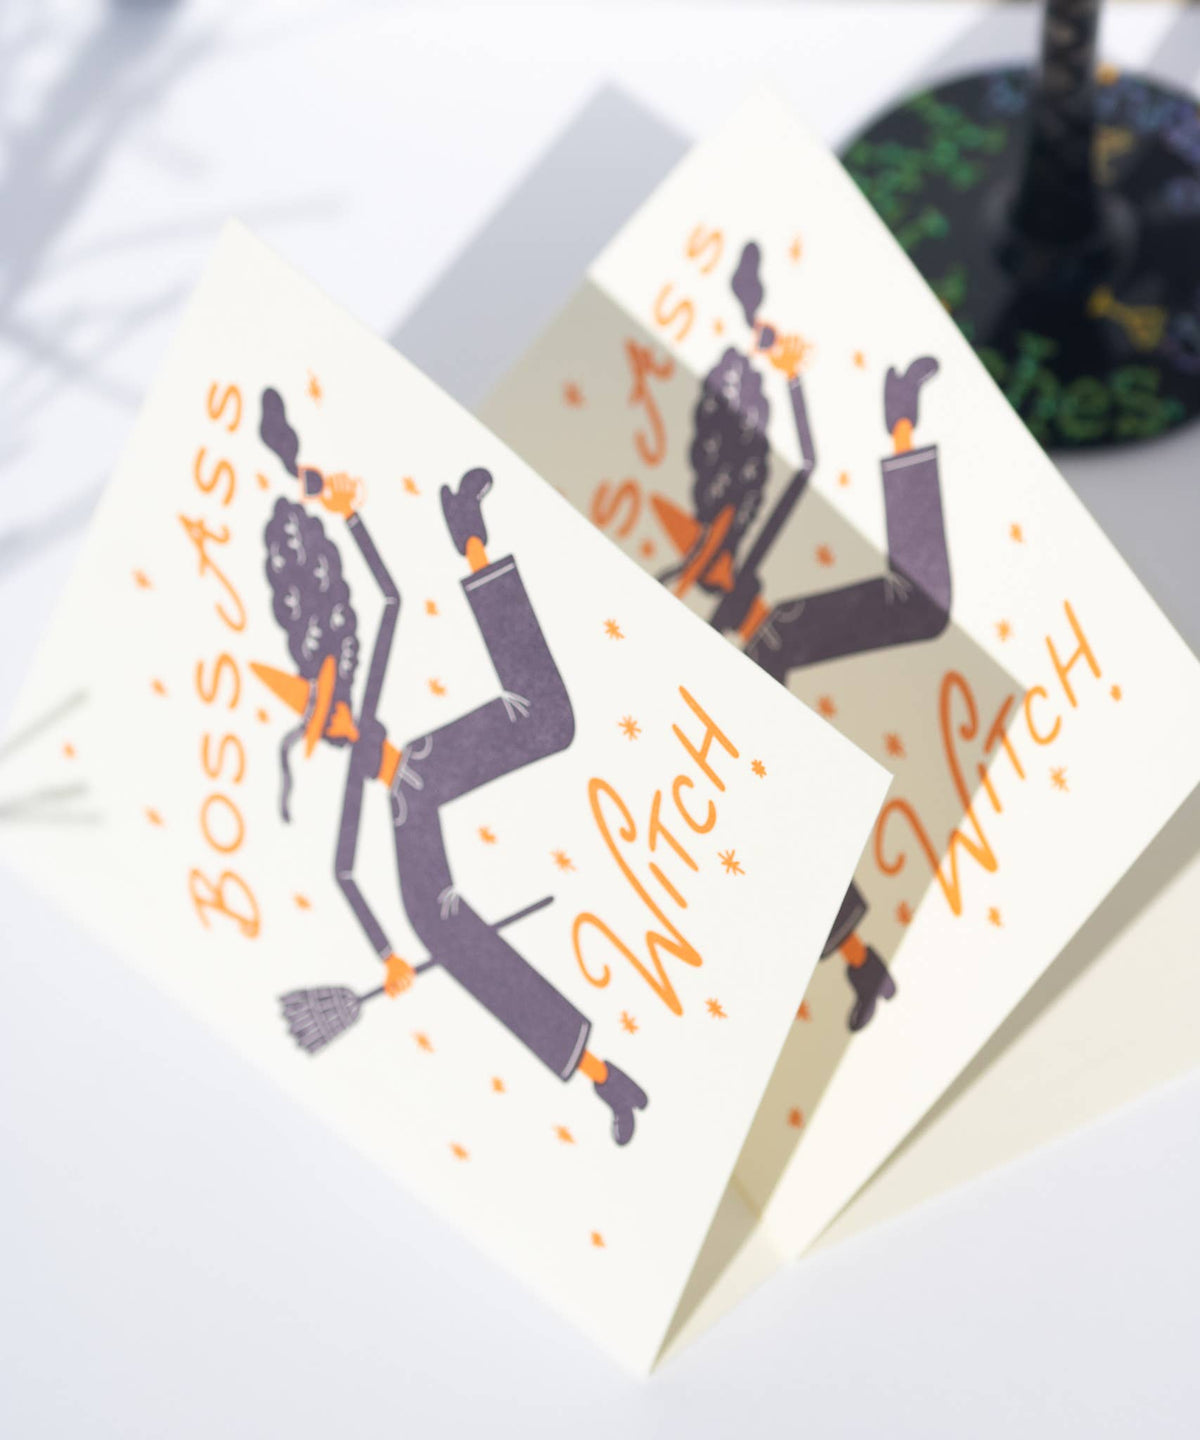 Boss Ass Witch Letterpress Greeting Card